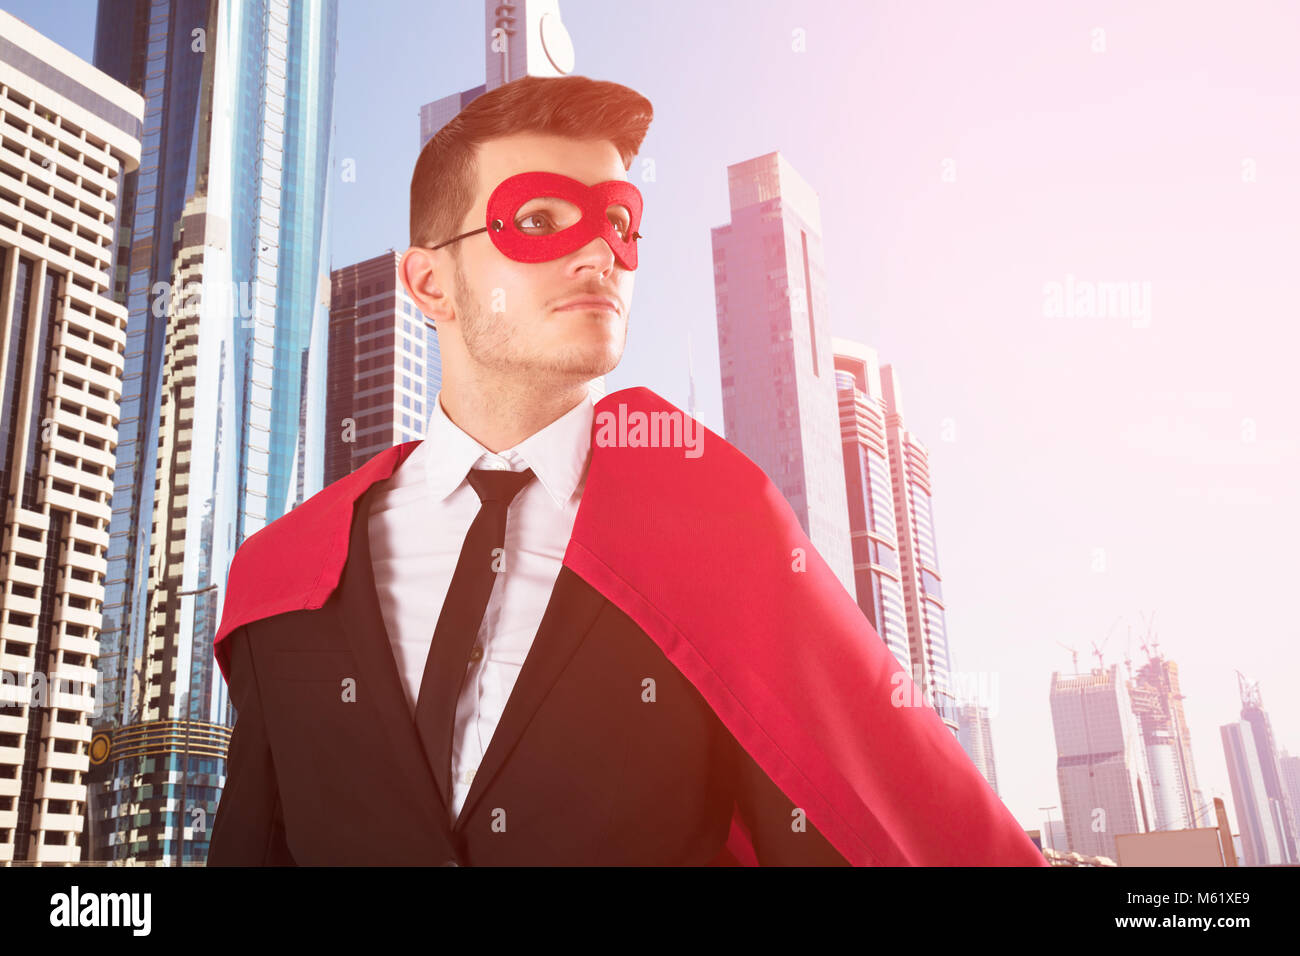 Junge Superheld Geschäftsmann auf der umgebenden Mauer mit Stadt Gebäude im Hintergrund Wolkenkratzer Stockfoto